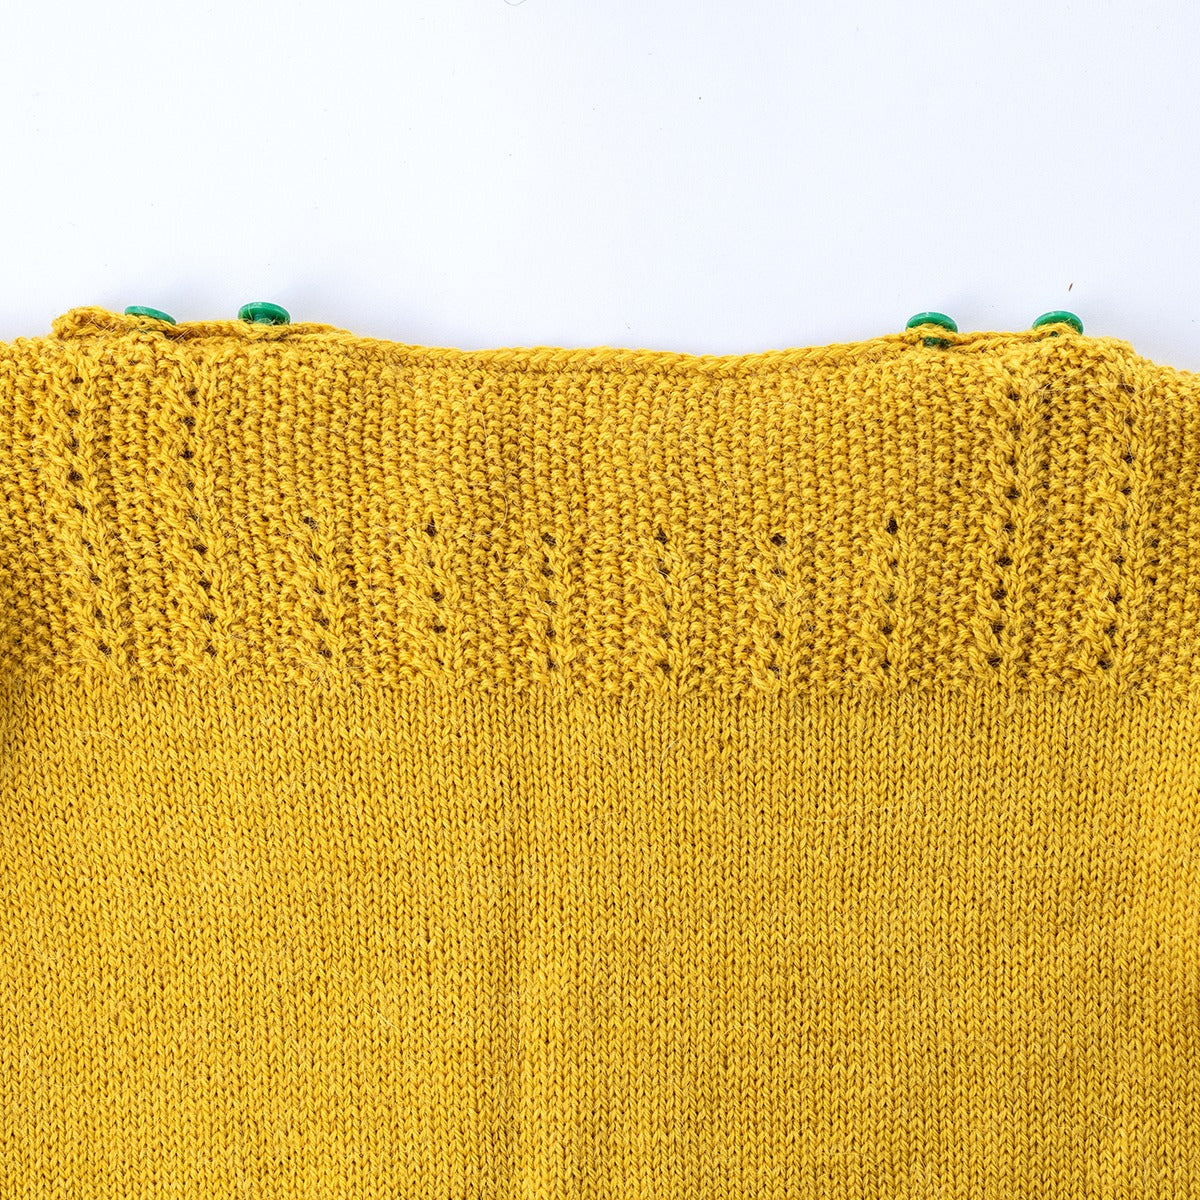 Kelbourne Woolens Patterns Baby Fiddlehead Sweater Pattern